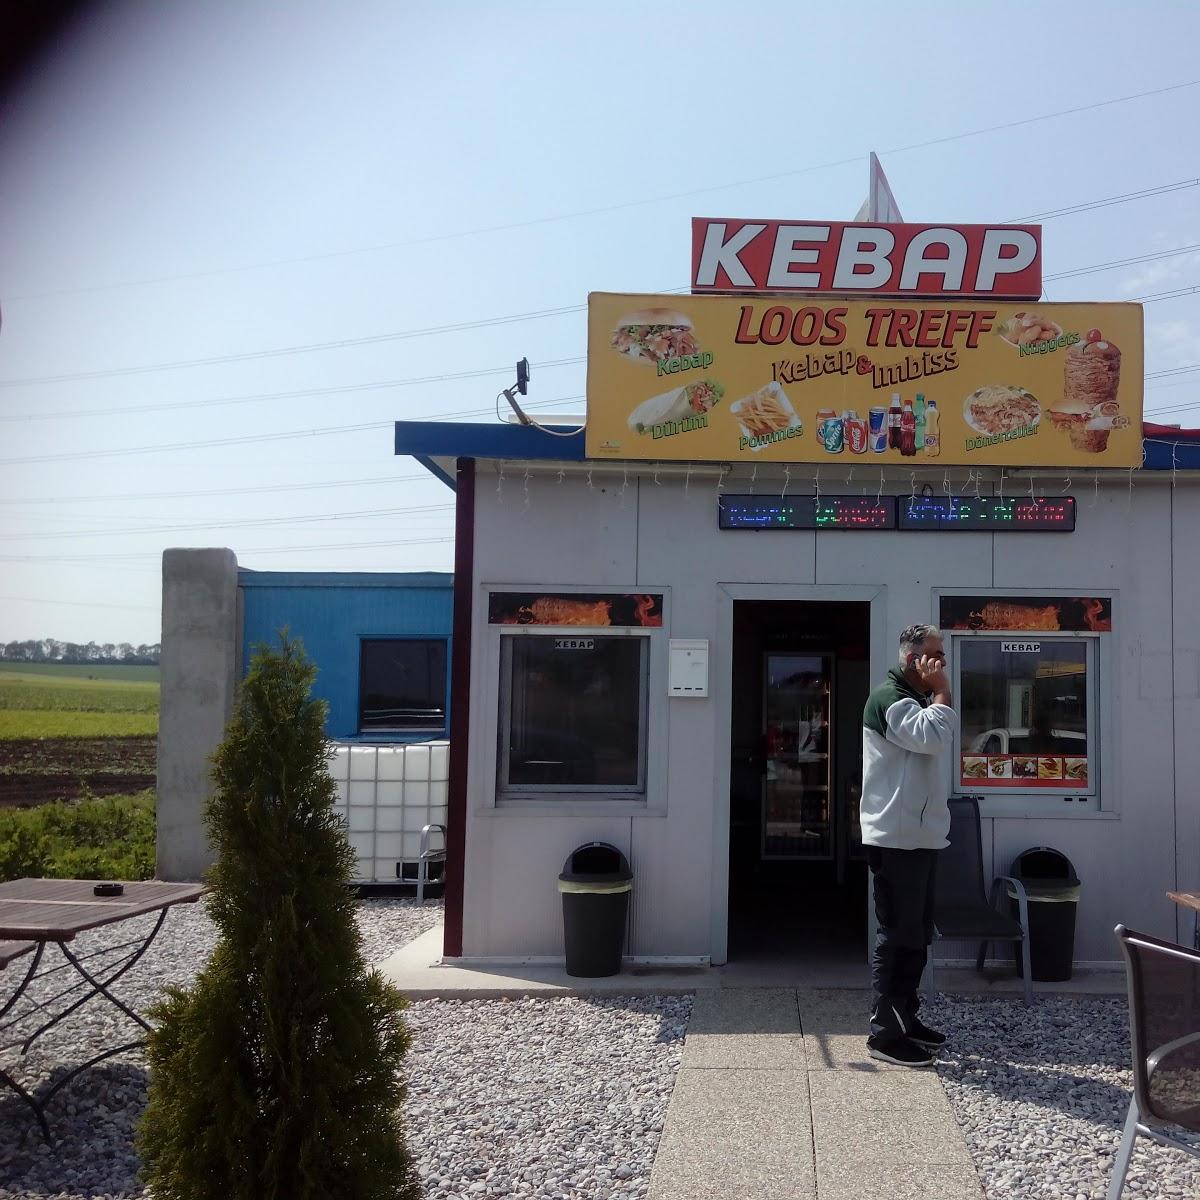 Restaurant "KEBAP LOOS TREFF" in Hürm